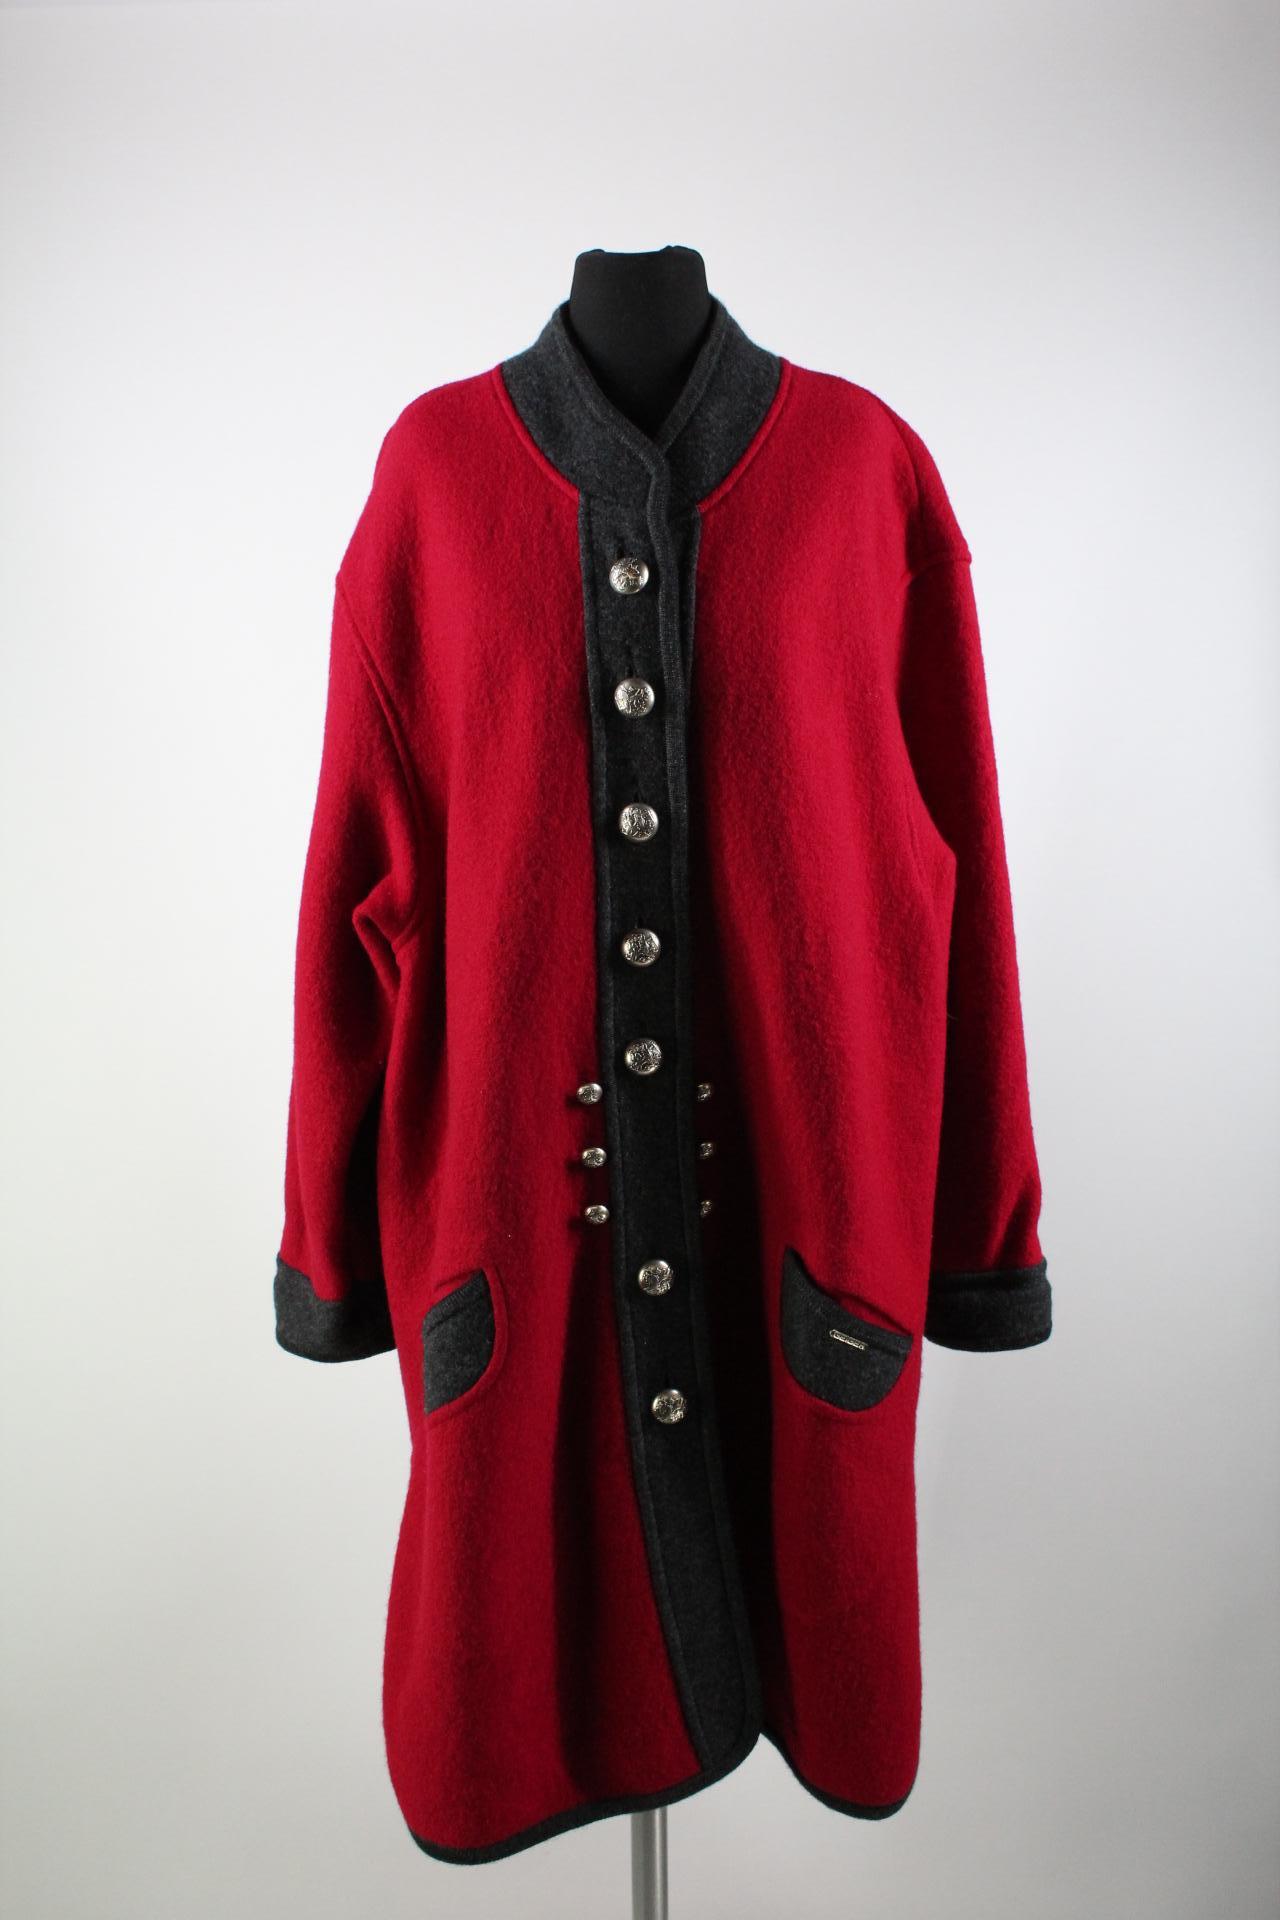 Geiger Damen-Mantel rot/grau Größe 40